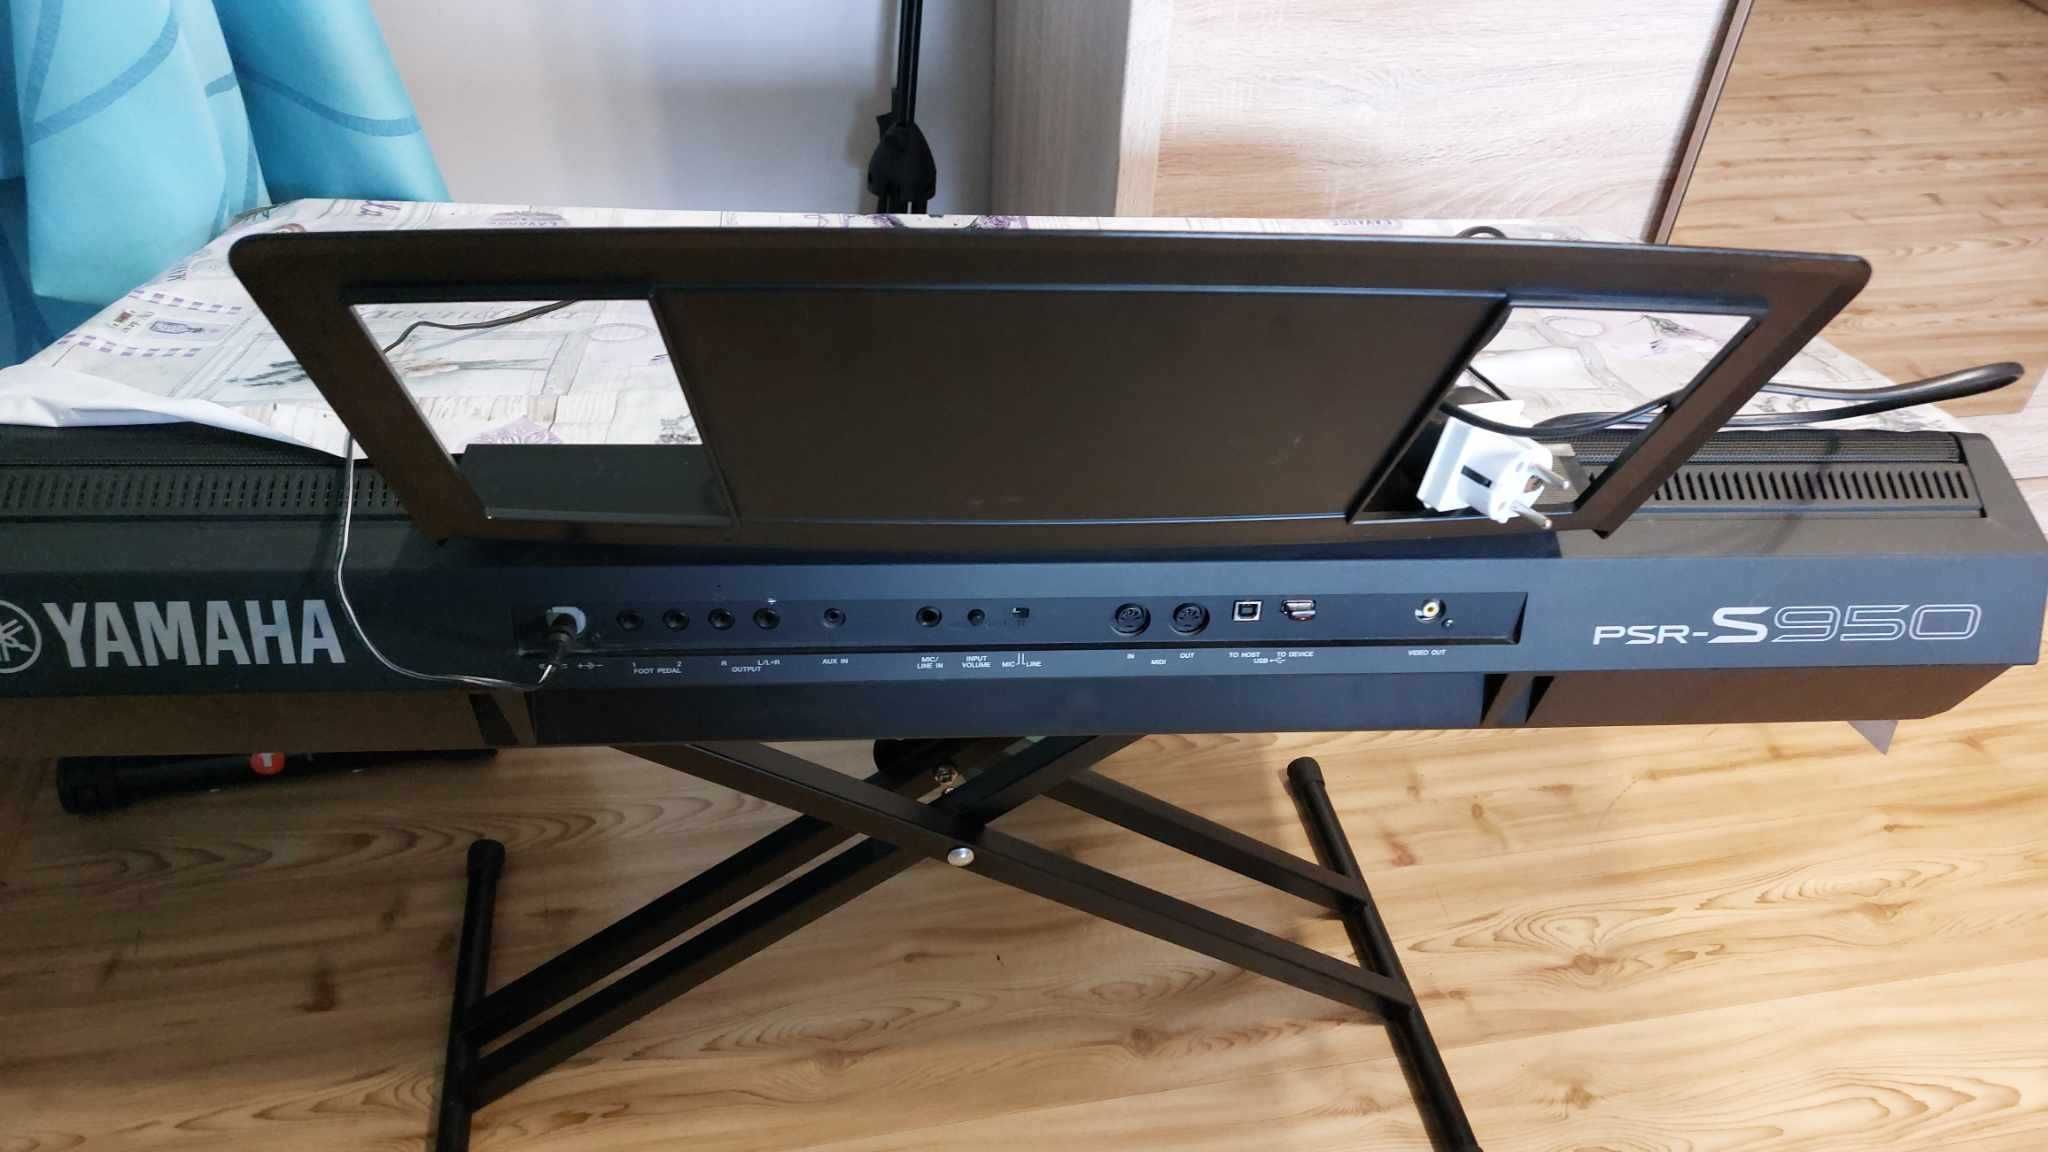 Keyboard Yamaha PSR-S950